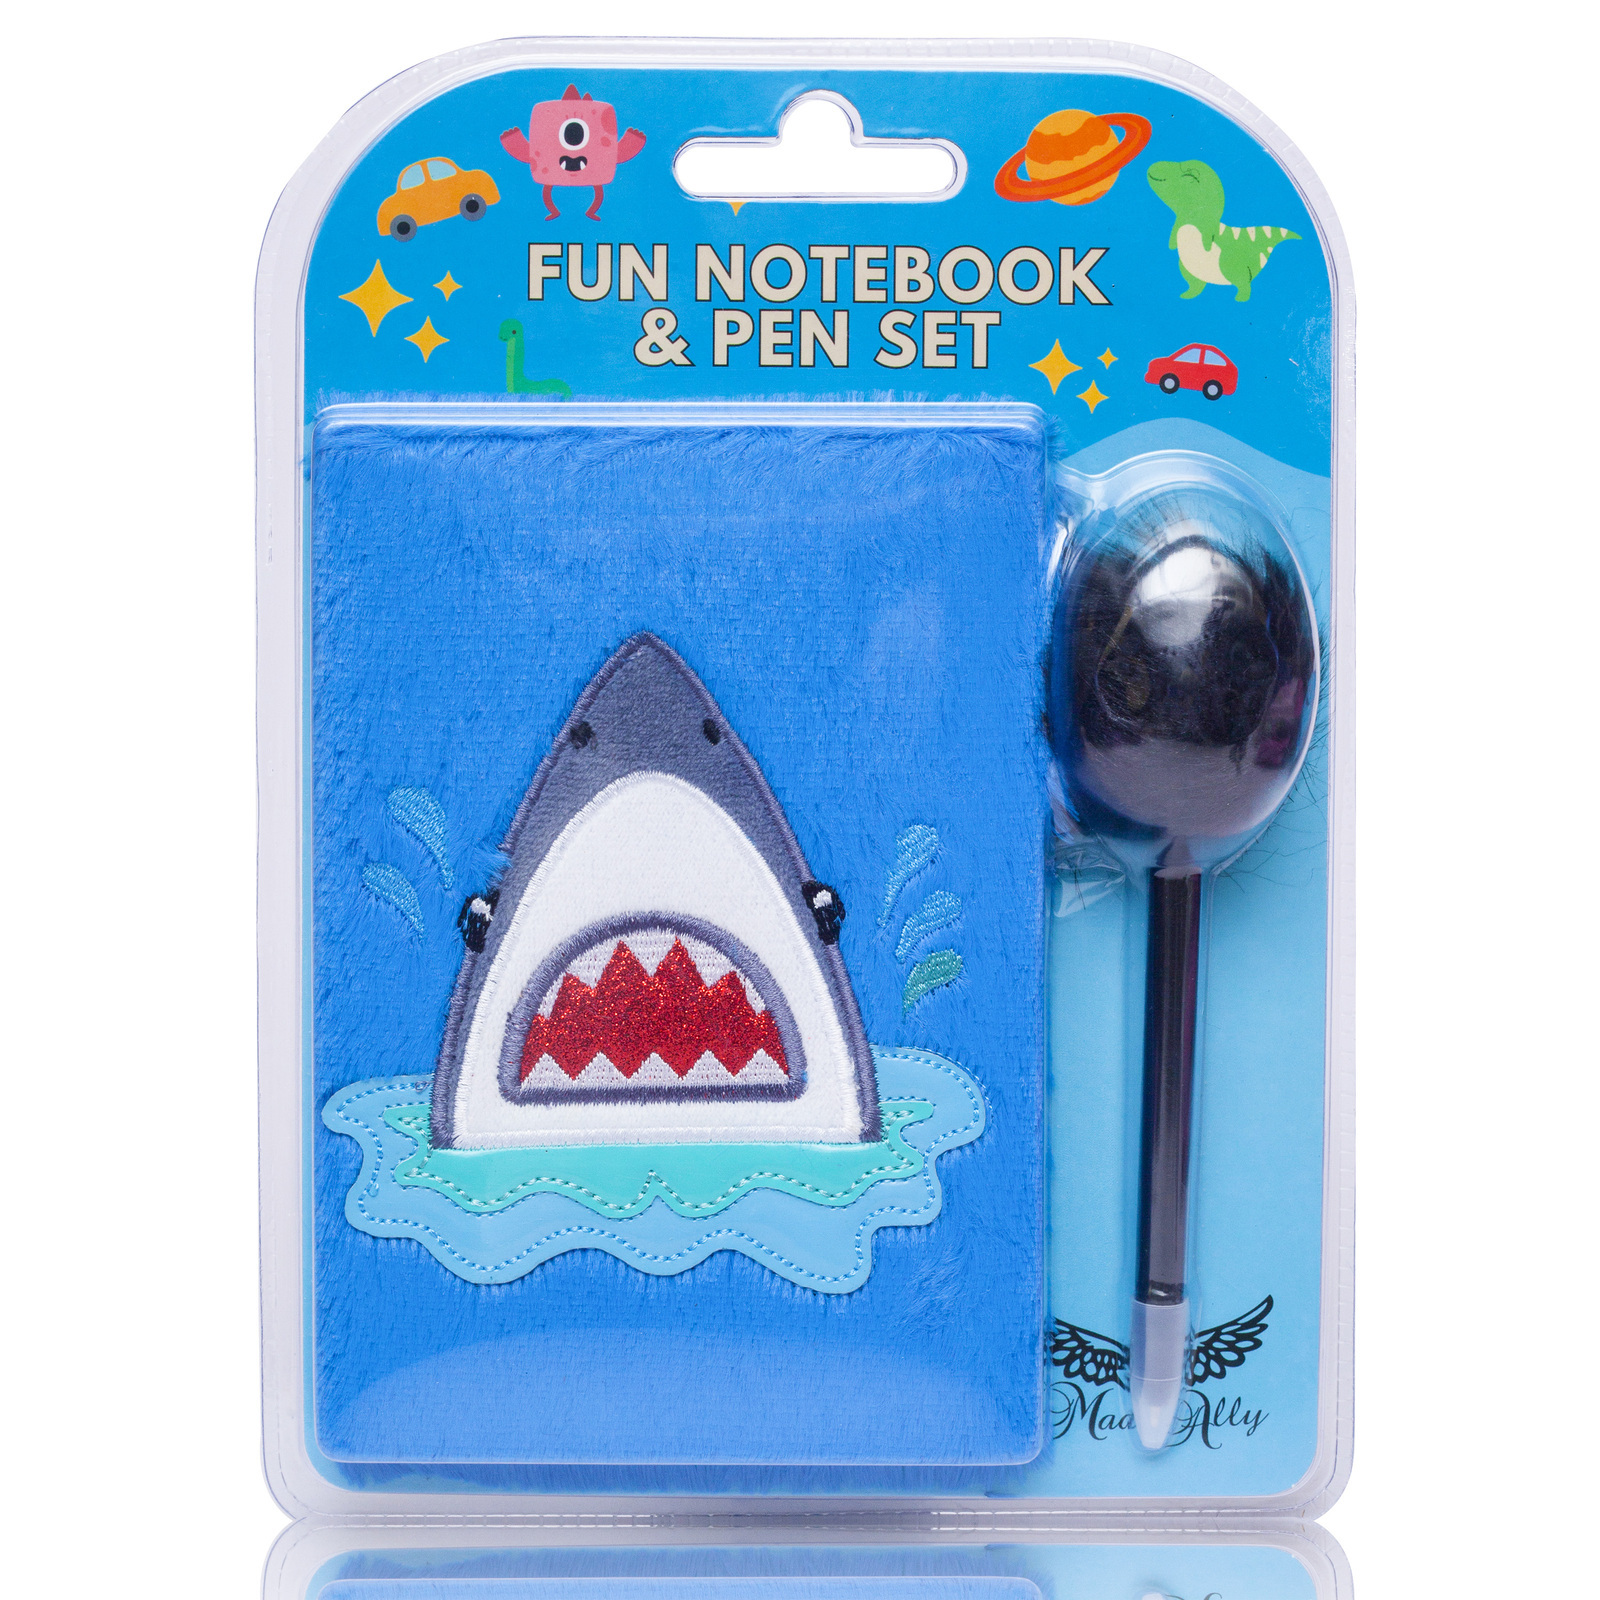 Mad Ally Fluffy Notebook - Shark